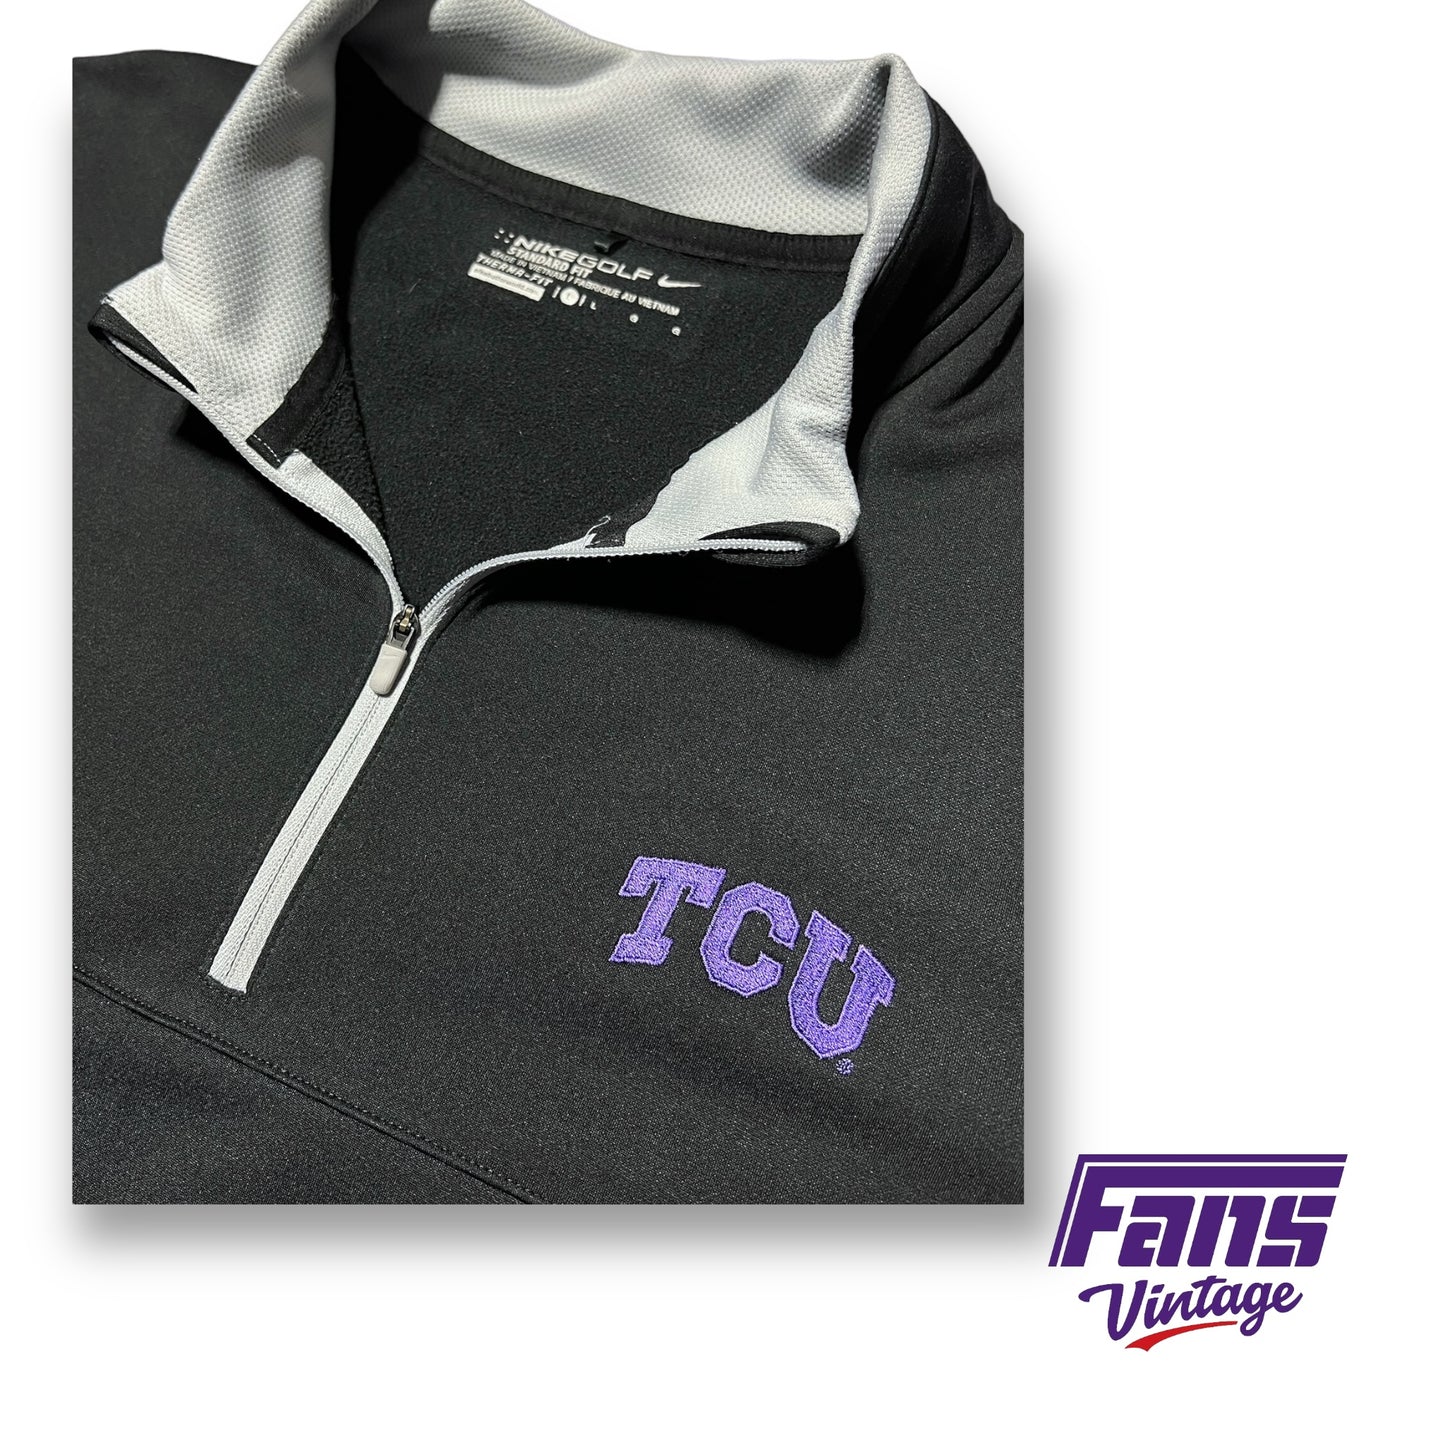 TCU Team Exclusive Nike Golf Coach’s Quarterzip Pullover